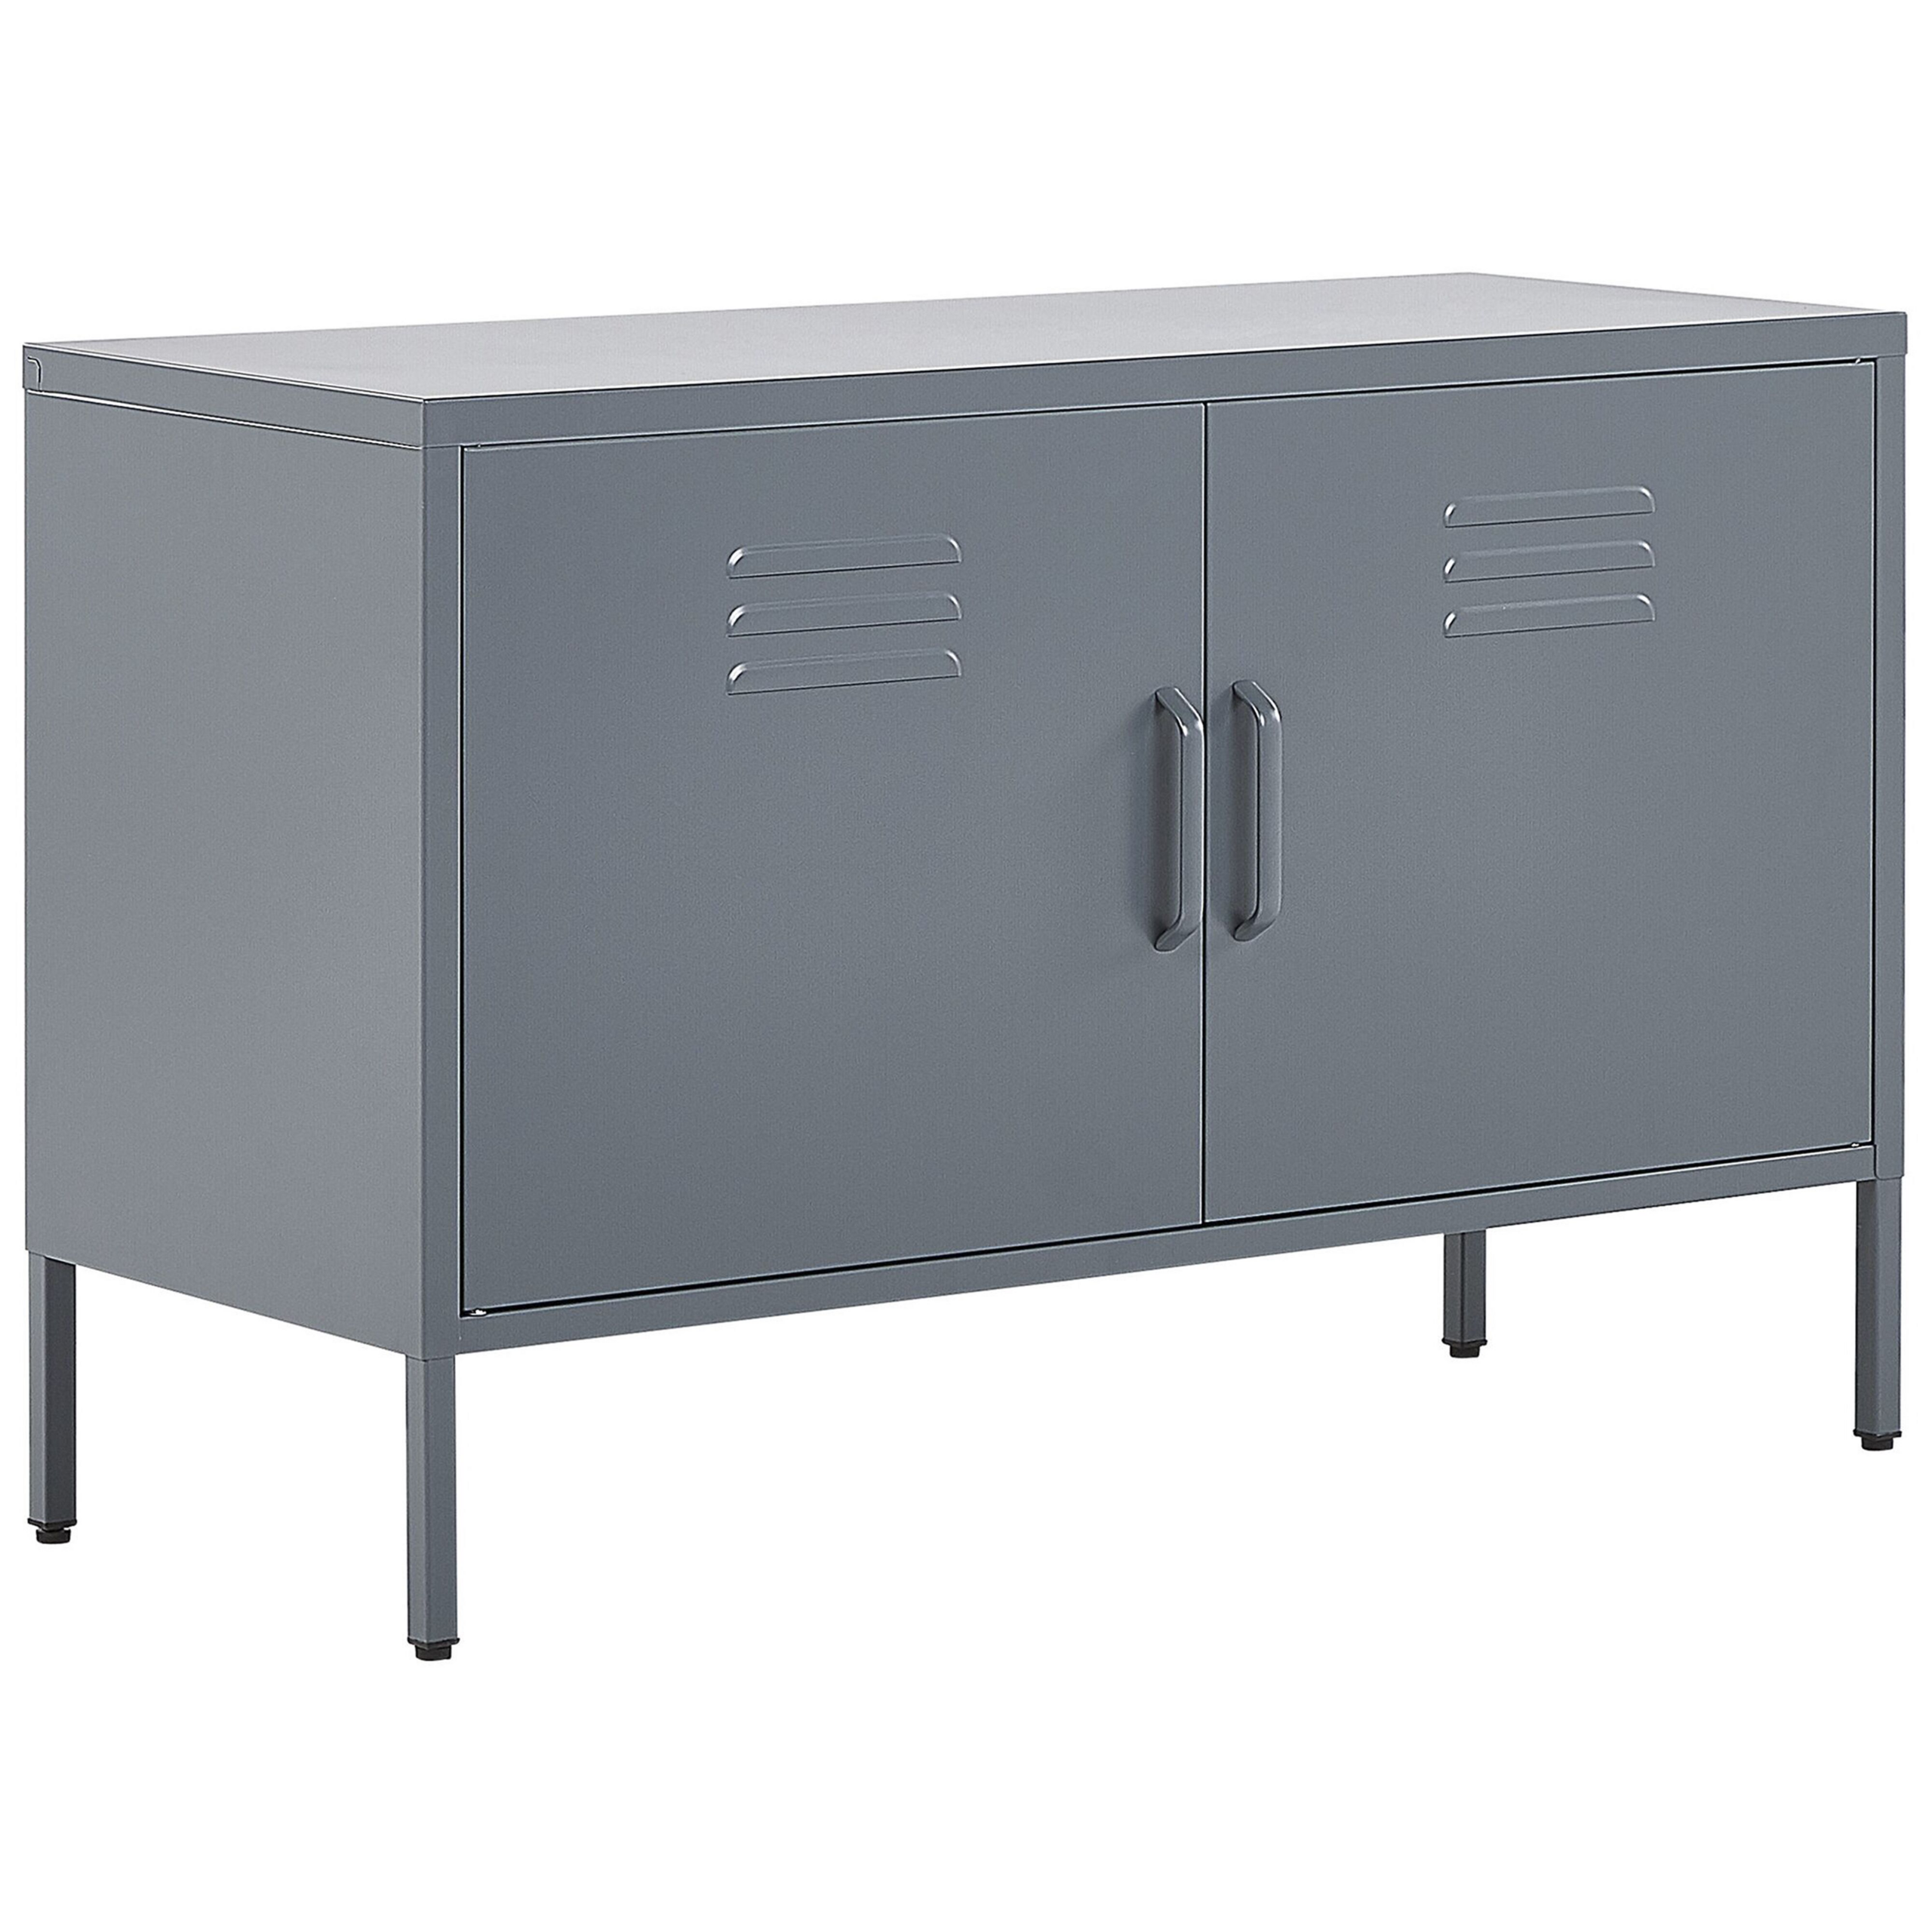 Beliani 2 Door Sideboard Grey Steel Home Office Furniture Shelves Leg Caps Industrial Design Material:Steel Size:40x65x100